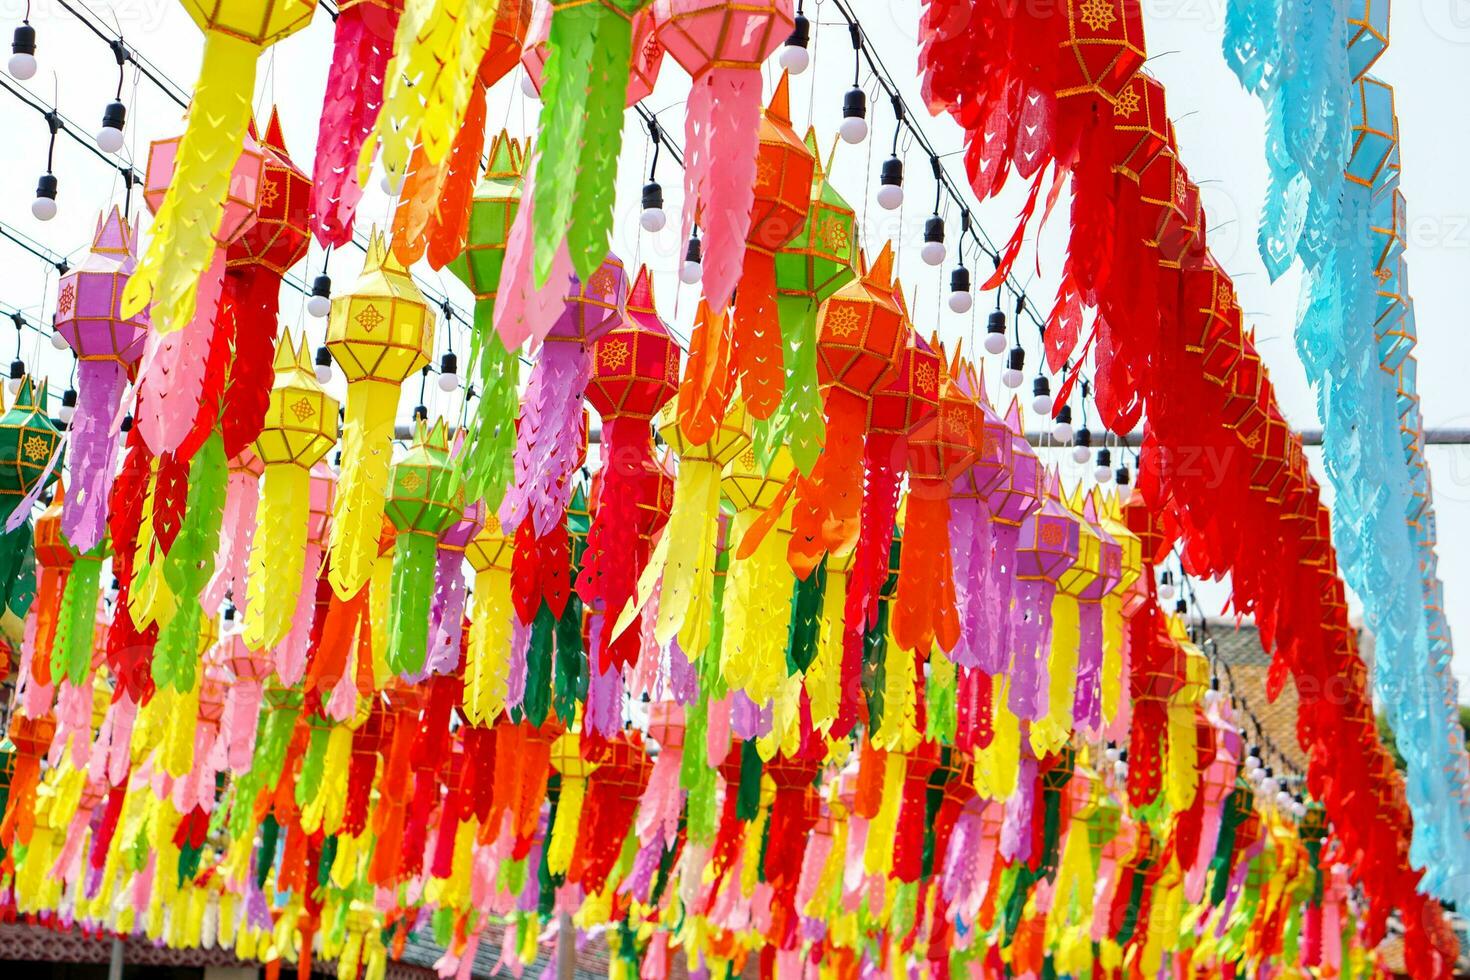 farbenfrohe perspektivische Ansicht von Laternen im thailändischen Lanna-Stil, die vor dem Tempel beim Hunderttausend-Laternen-Festival, Lumhun, Thailand, hängen sollen. foto